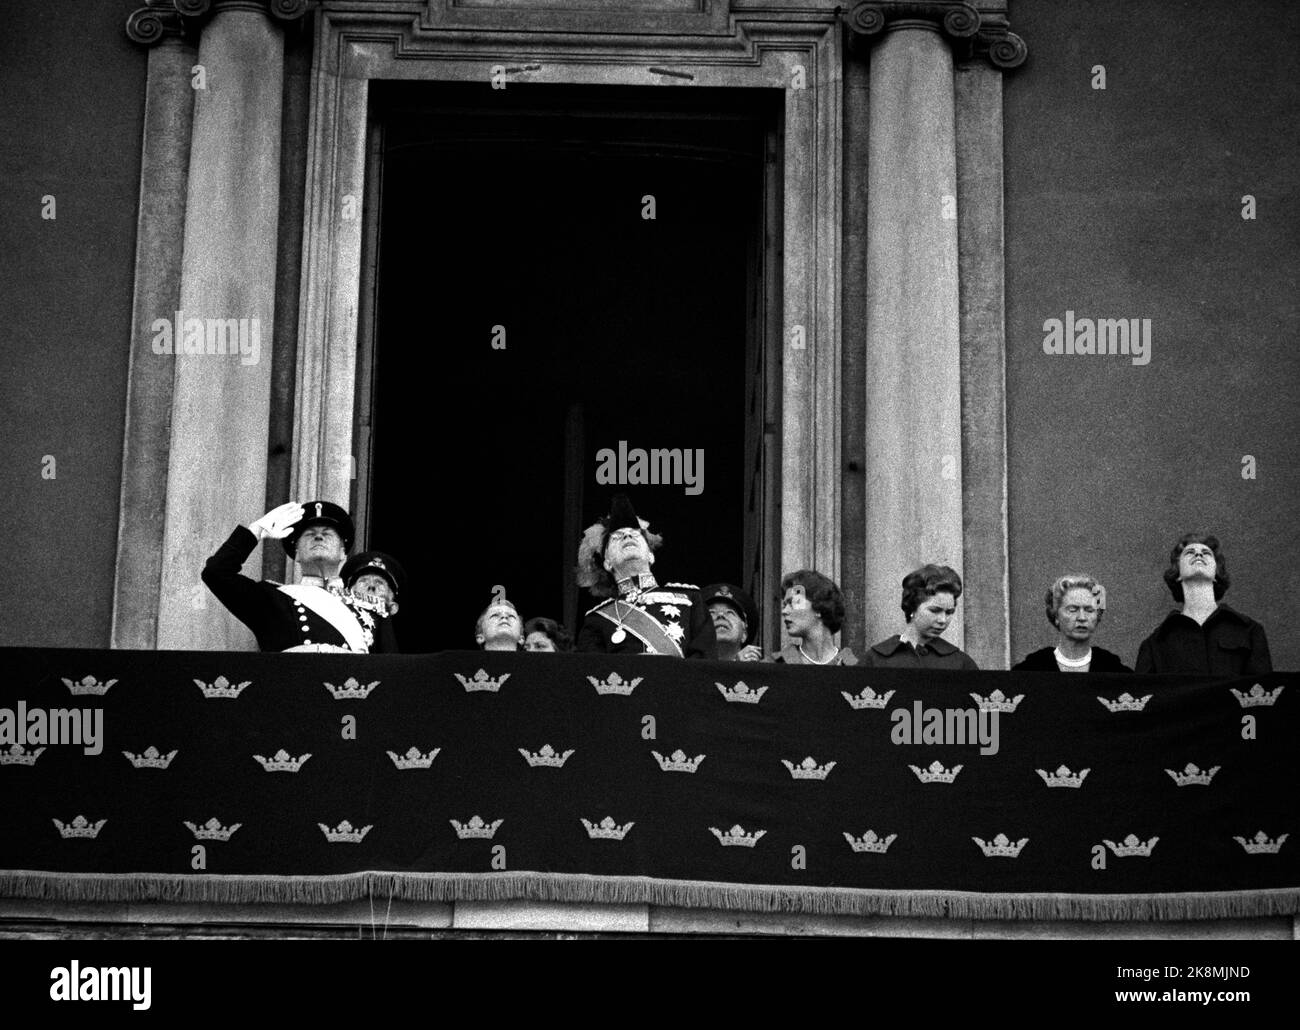 Schweden, Stockholm, 2. Mai 1959. König Olav besucht Stocholm und Schwedens König Gustav Adolf. Hier sind sie beide auf dem Schlossbalkon in Stockholm, sie blicken in den Himmel, wo die schwedische Luftwaffe eine Show hat. Foto: Aage Storløkken / Aktuell / NTB Stockfoto